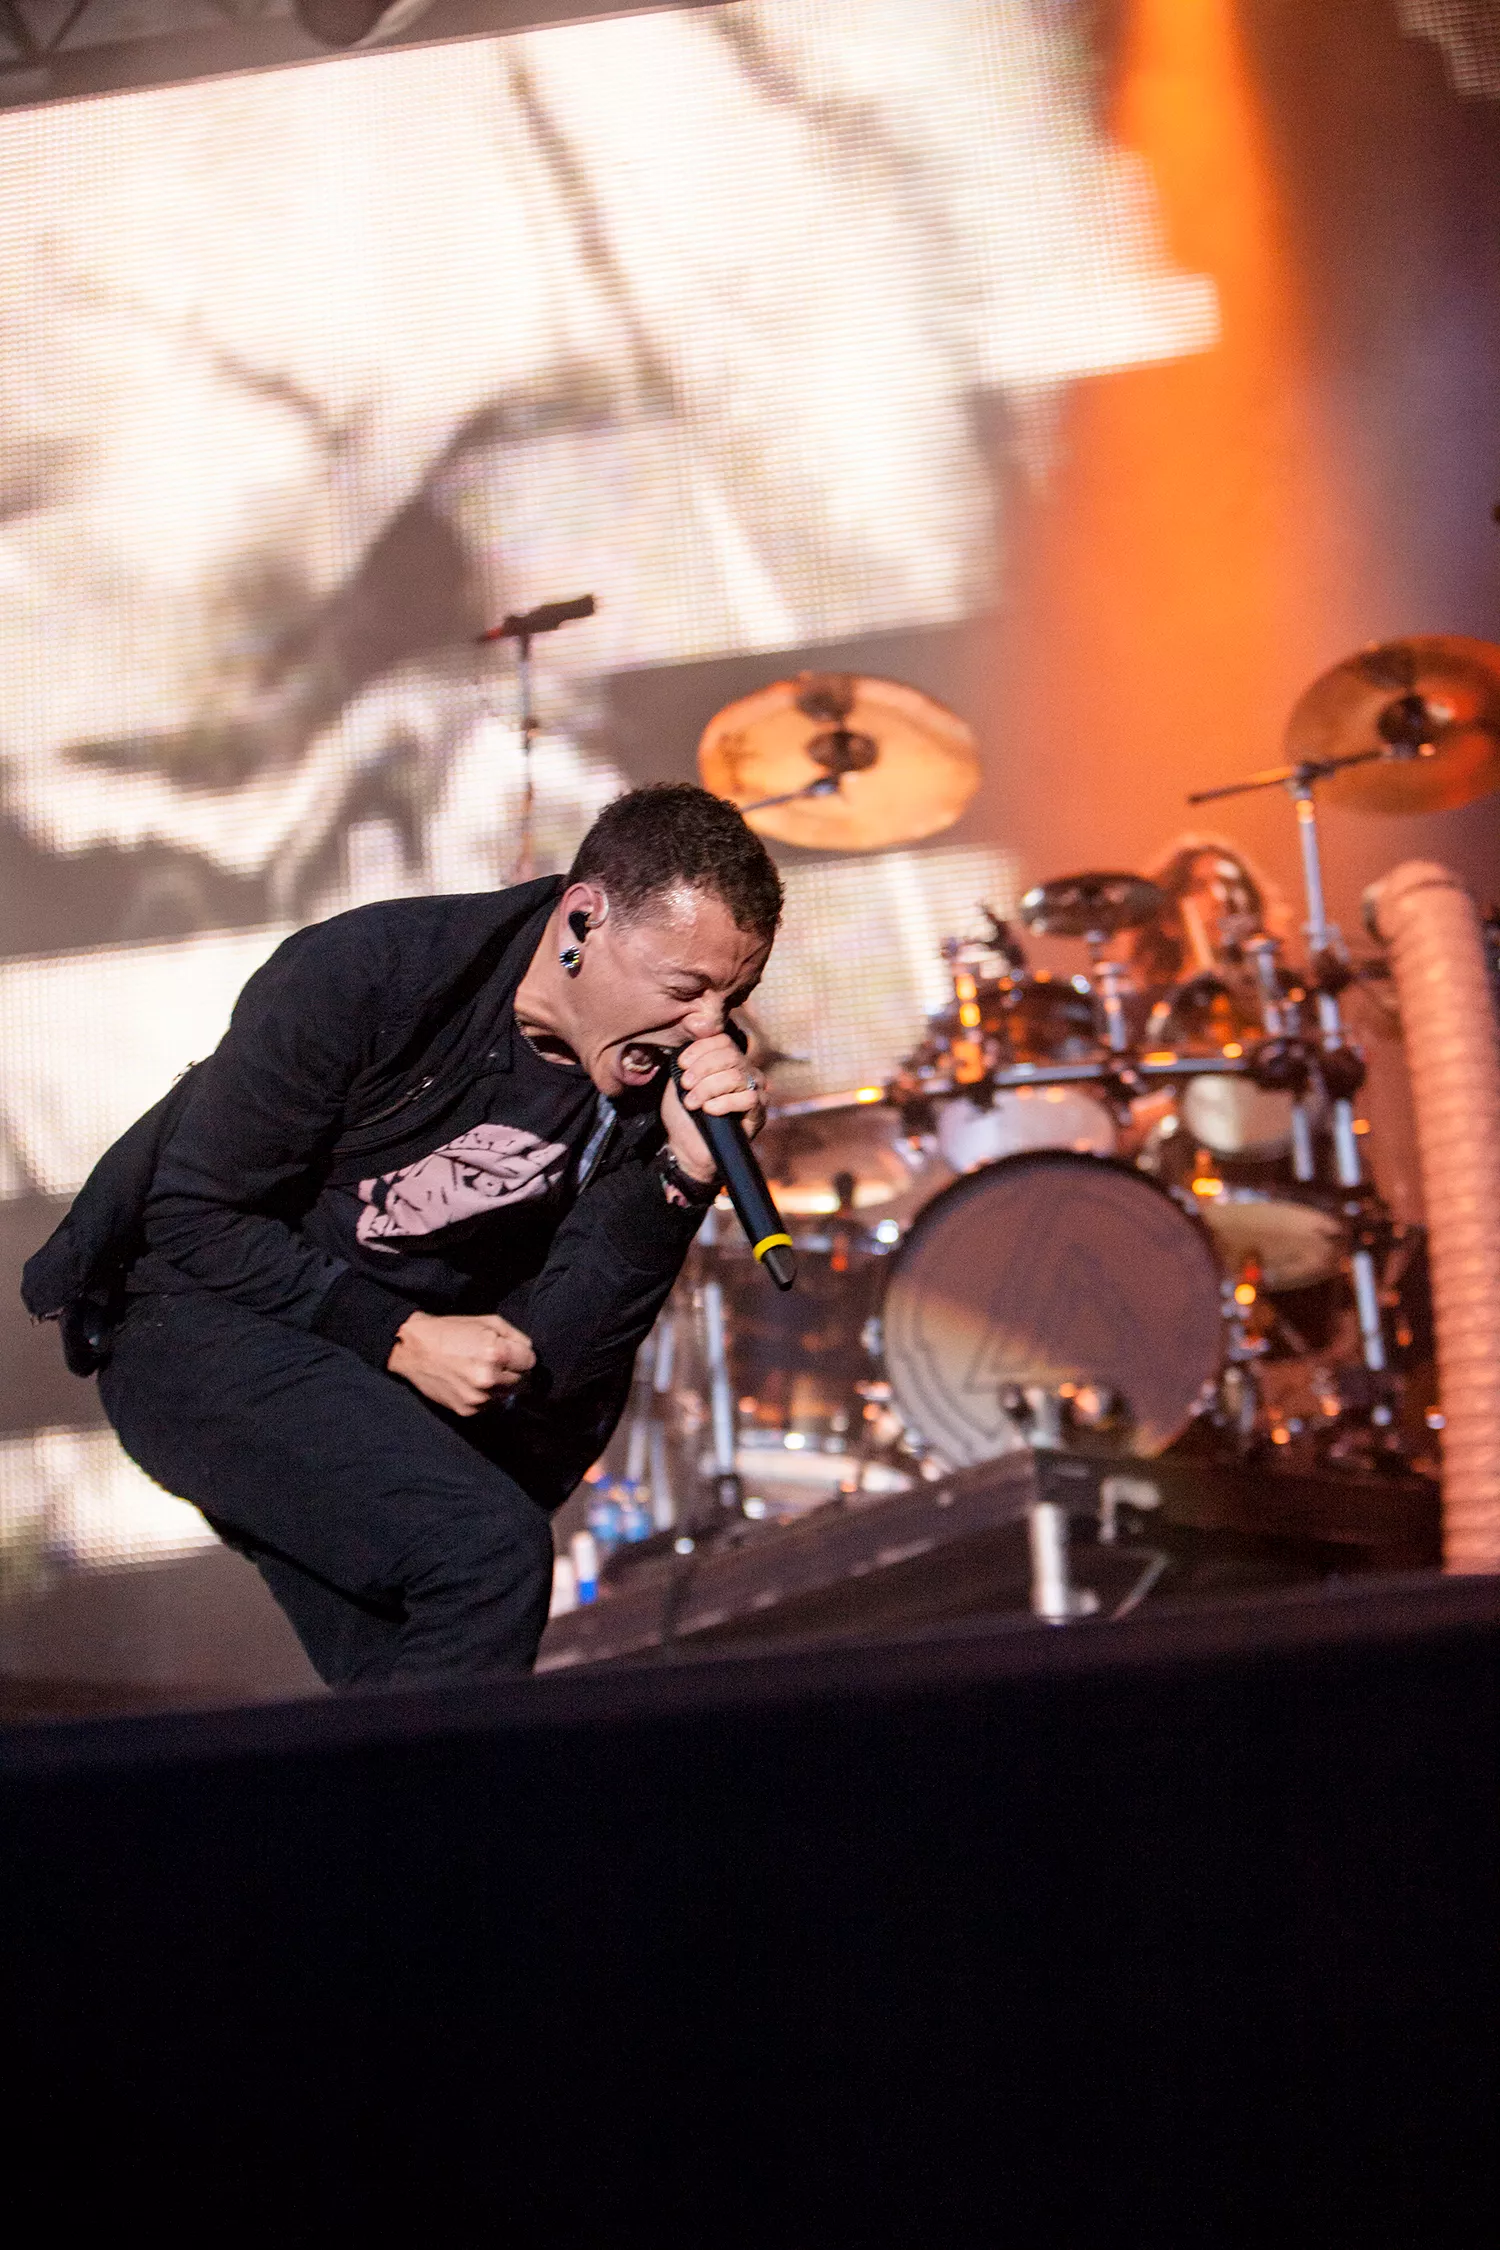 Linkin Park generobrer den danske hitliste efter Chester Benningtons død